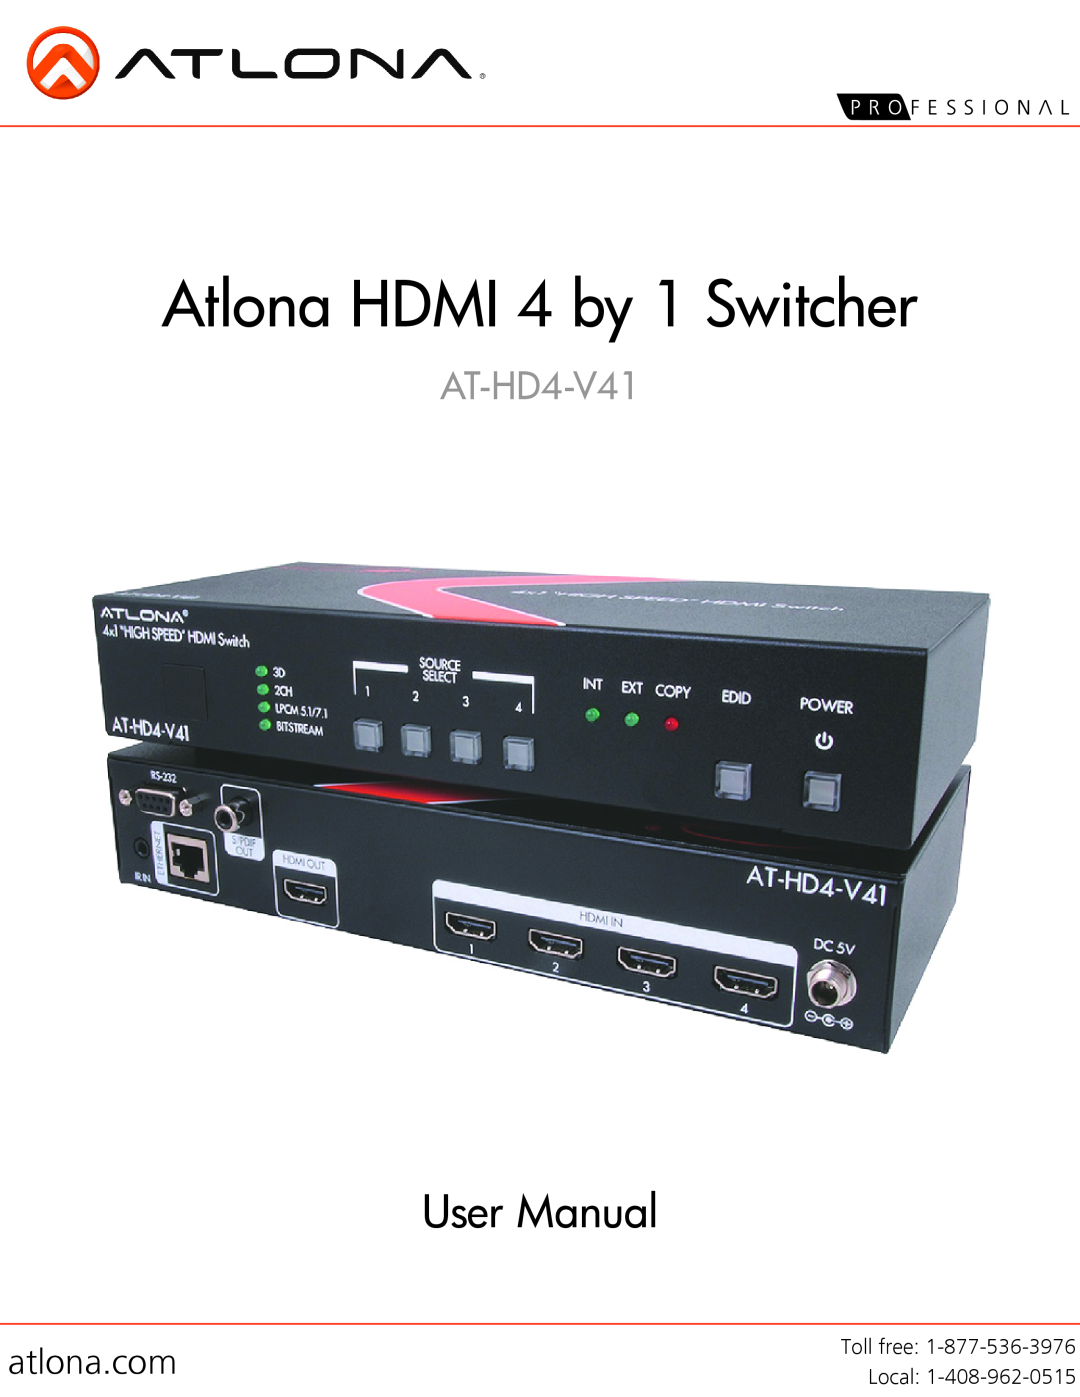 Atlona AT-HD4-V41 user manual atlona.com, Atlona HDMI 4 by 1 Switcher, User Manual, Local 